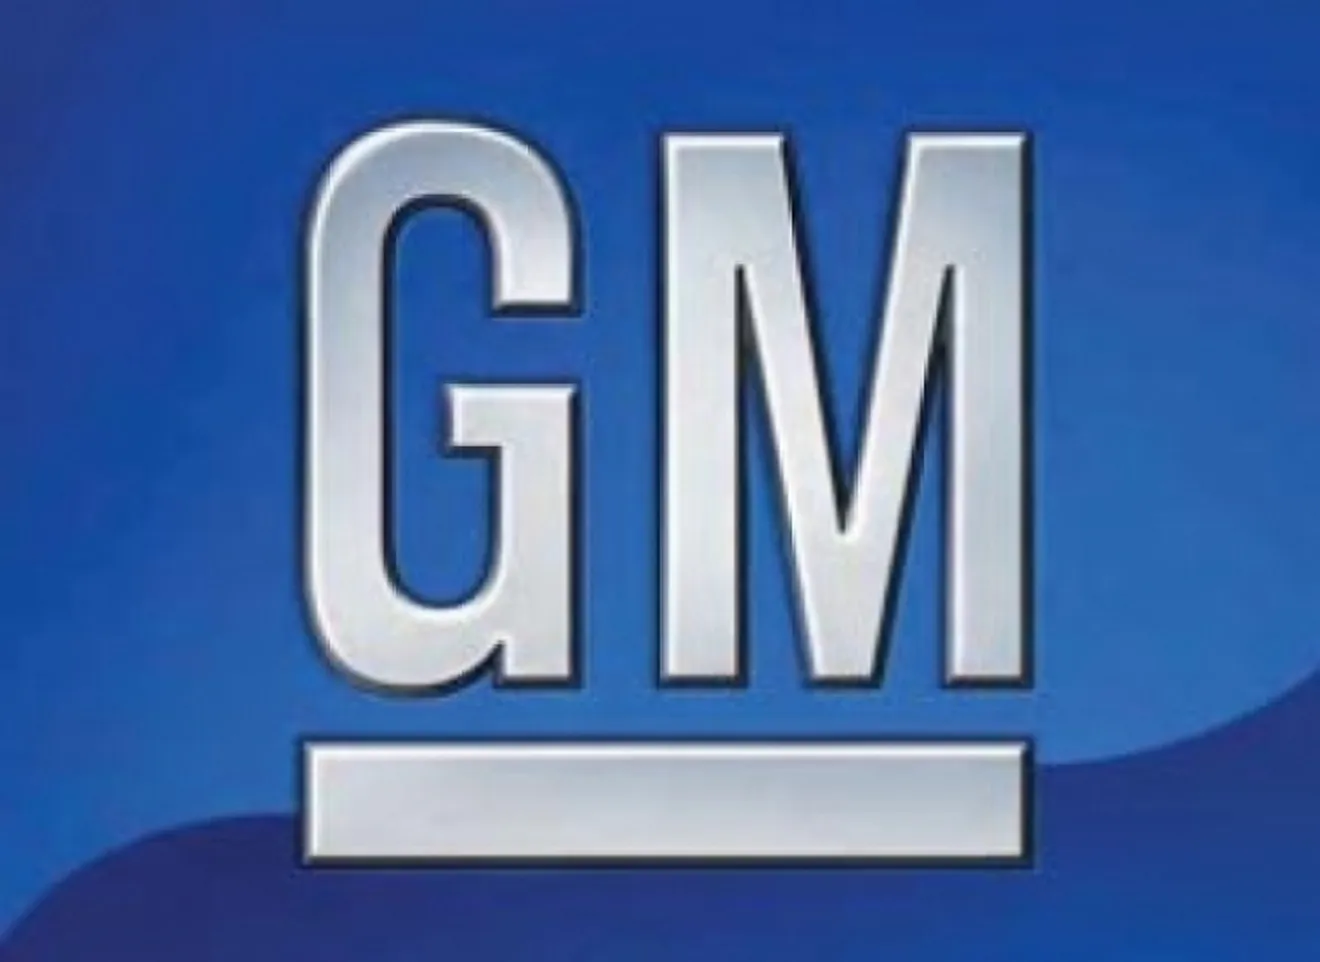 General Motors enfrenta la bancarrota: Sus acciones caen a valores de 1933